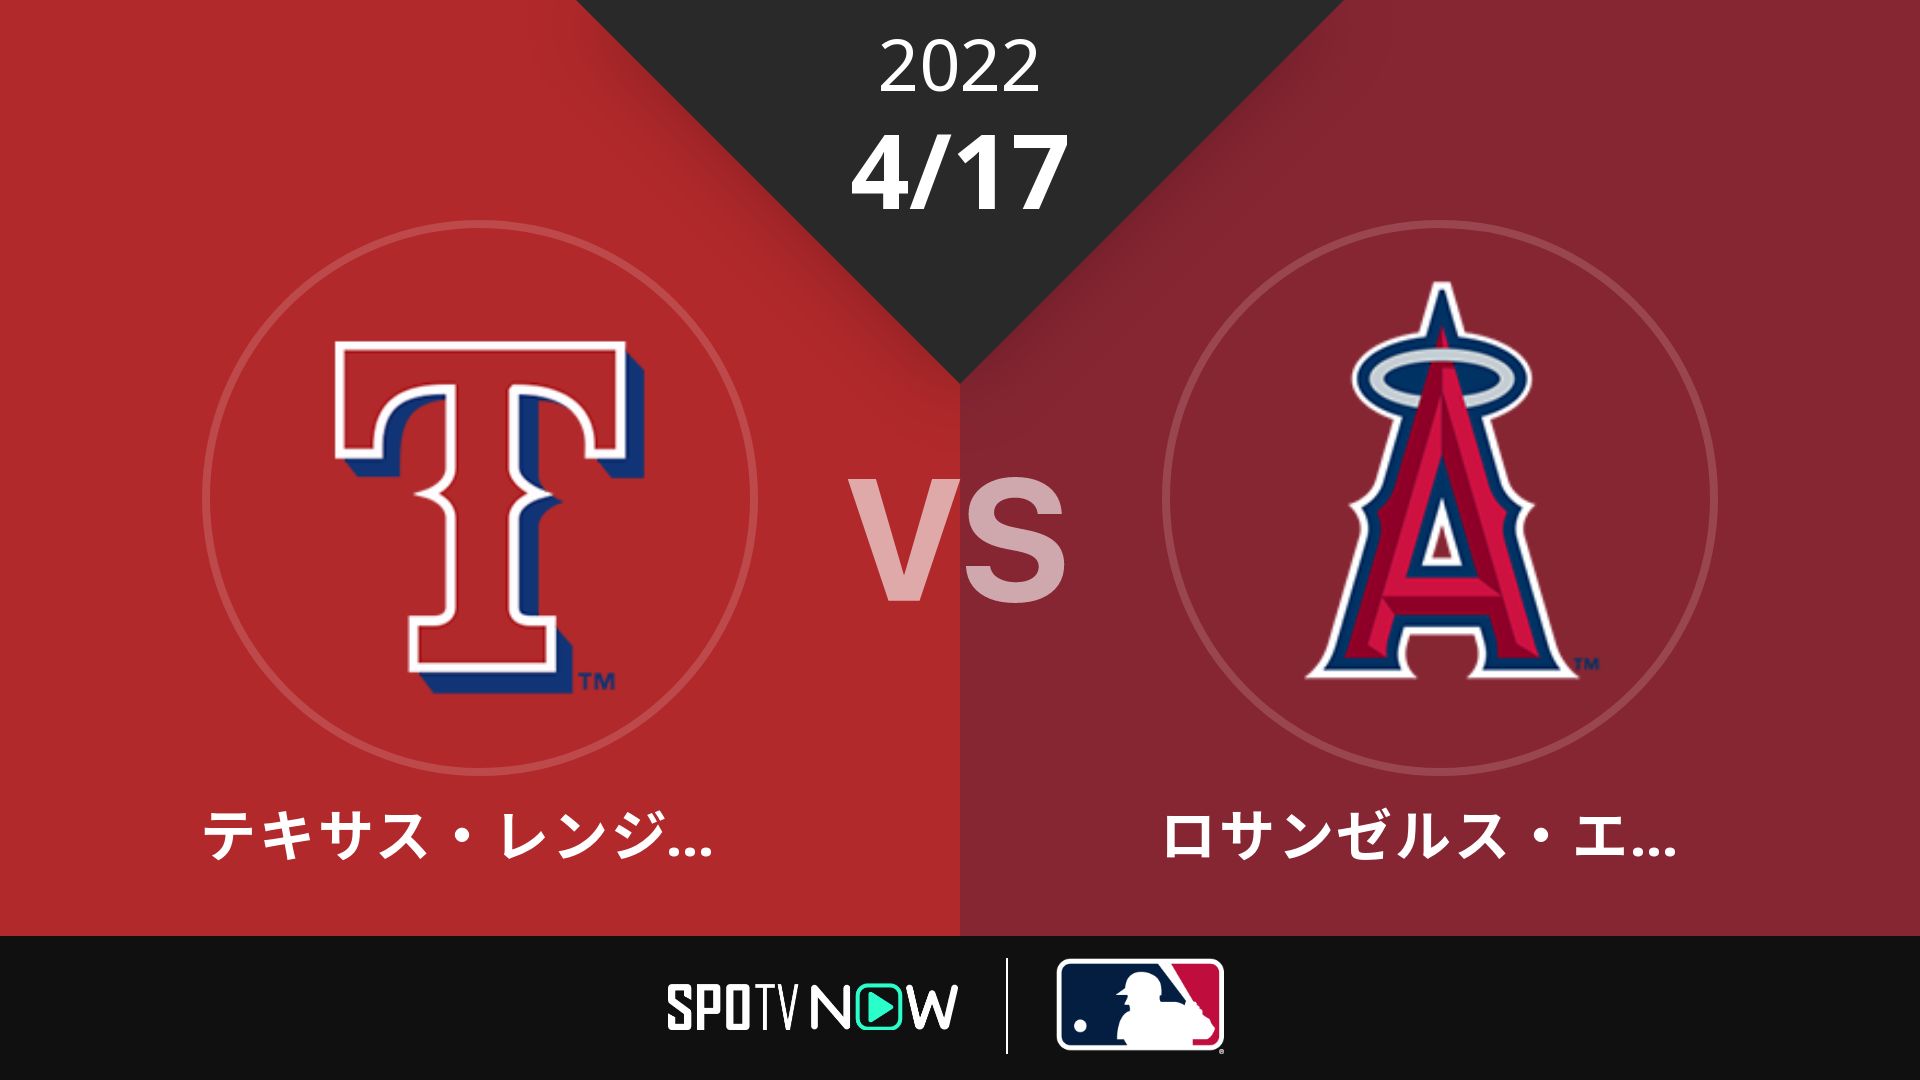 2022/4/17 レンジャーズ vs エンゼルス [MLB]